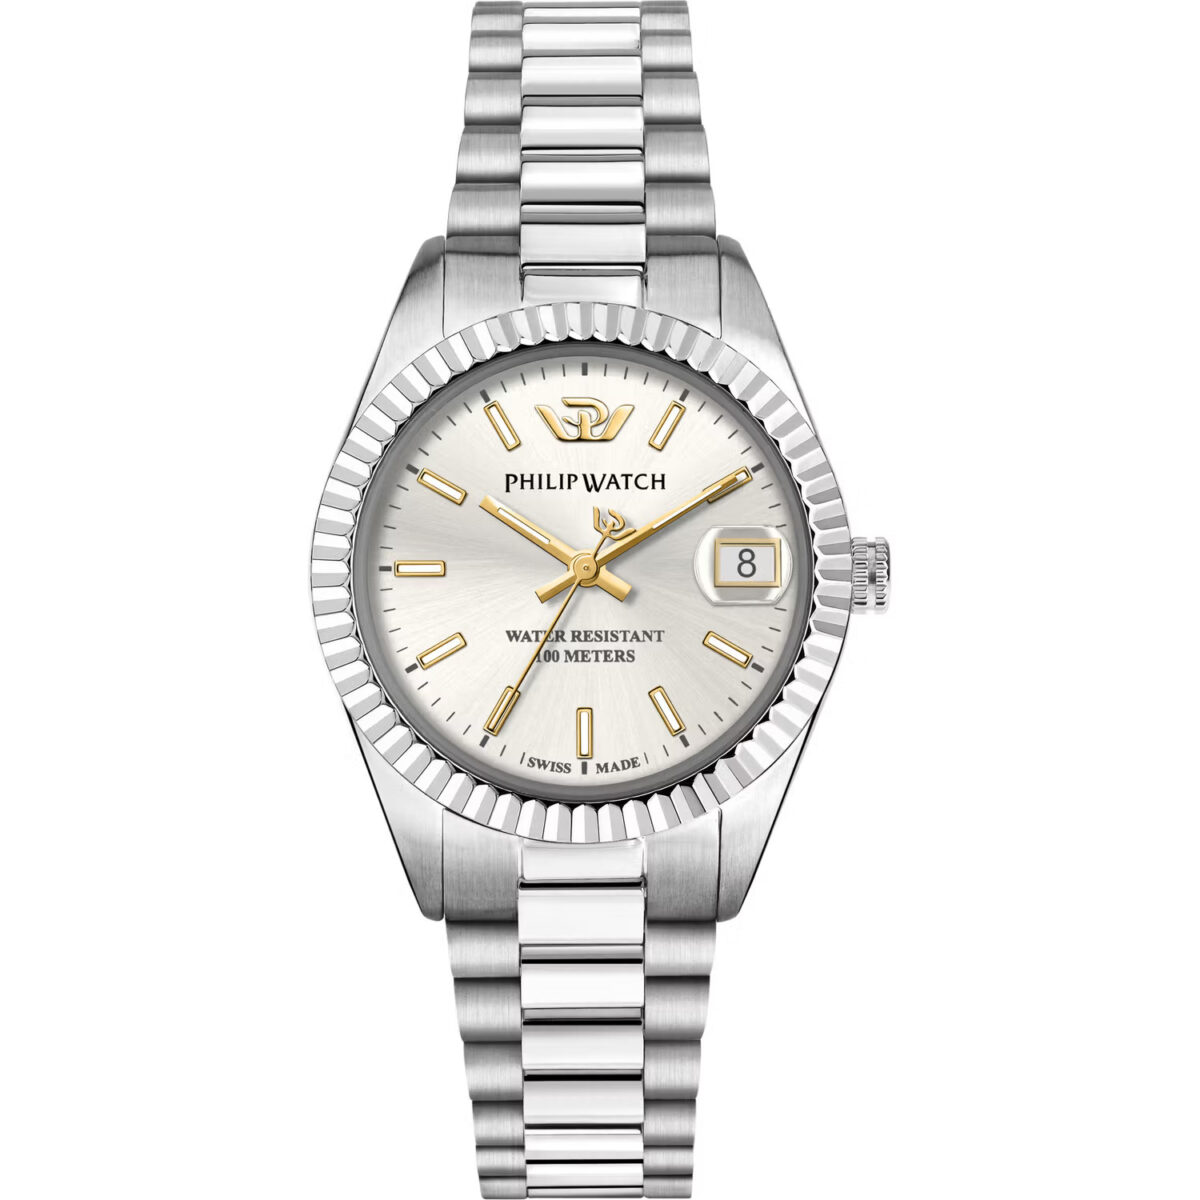 Orologio donna quadrantebianco Philip Watch solo tempo idea regalo R8253597651 prezzo